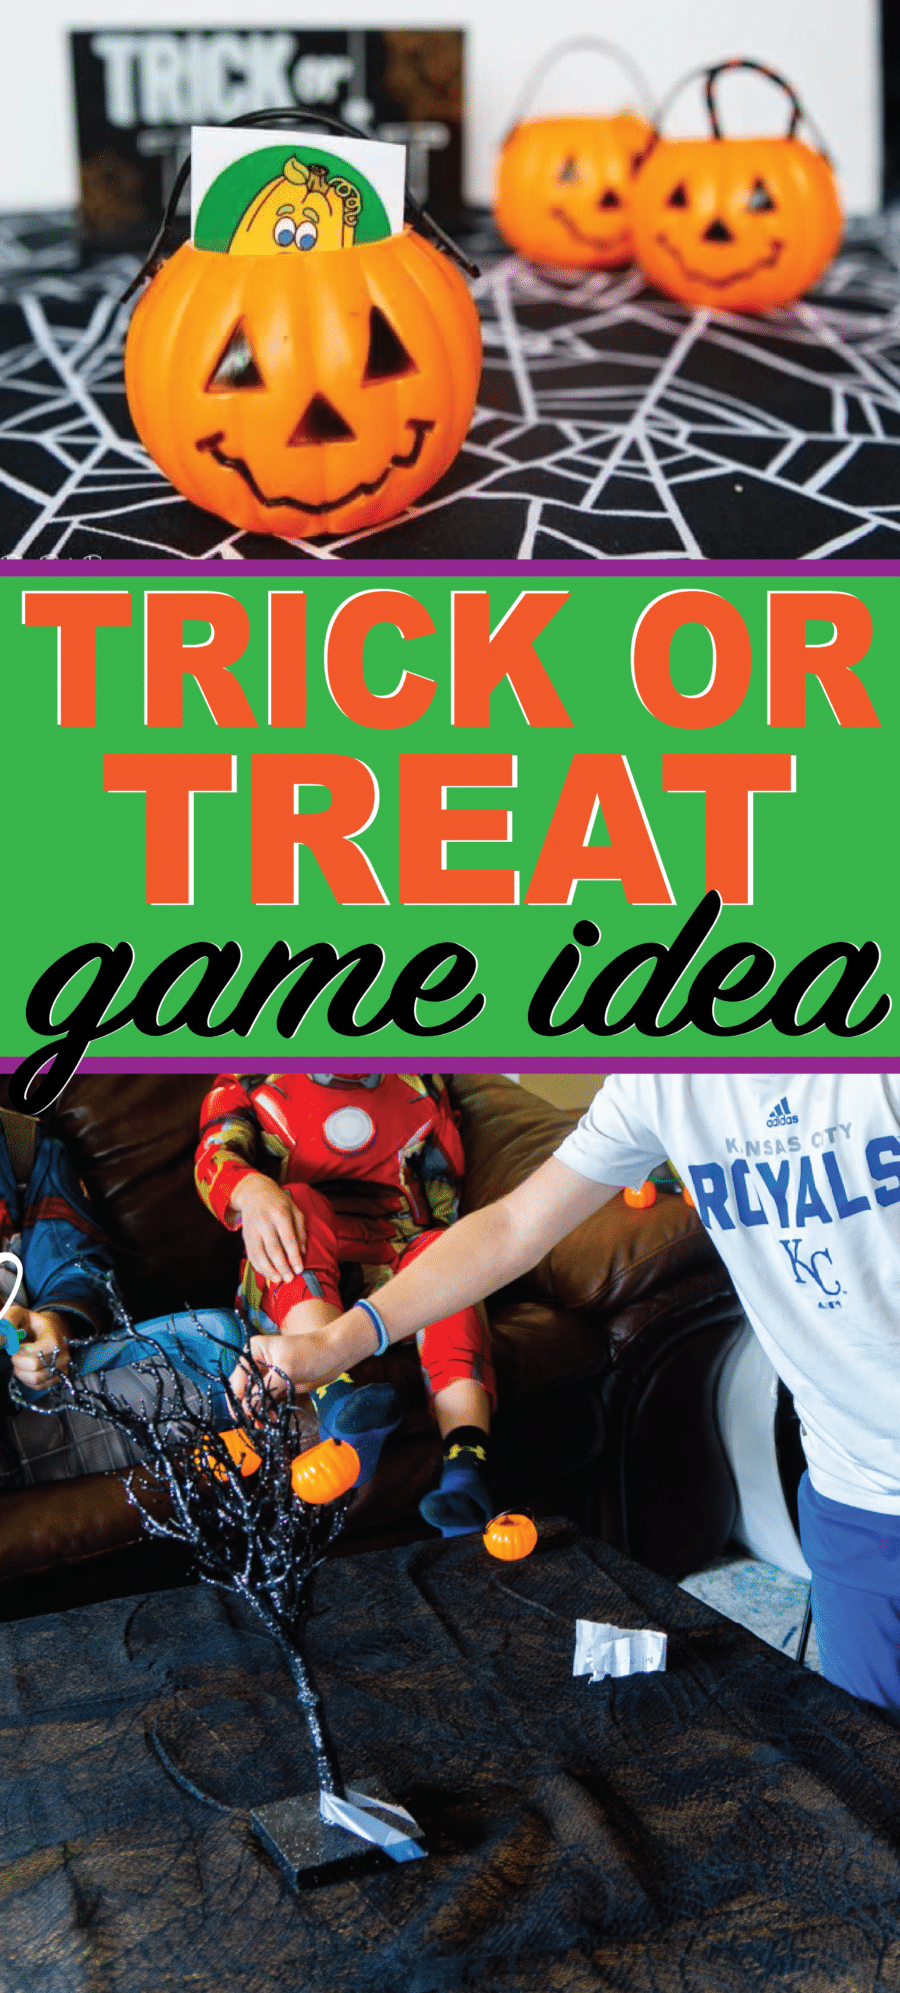 Speel deze trick or treat Halloween-game met kinderen van alle leeftijden! Perfect voor een klasfeestje of Halloween-avond!